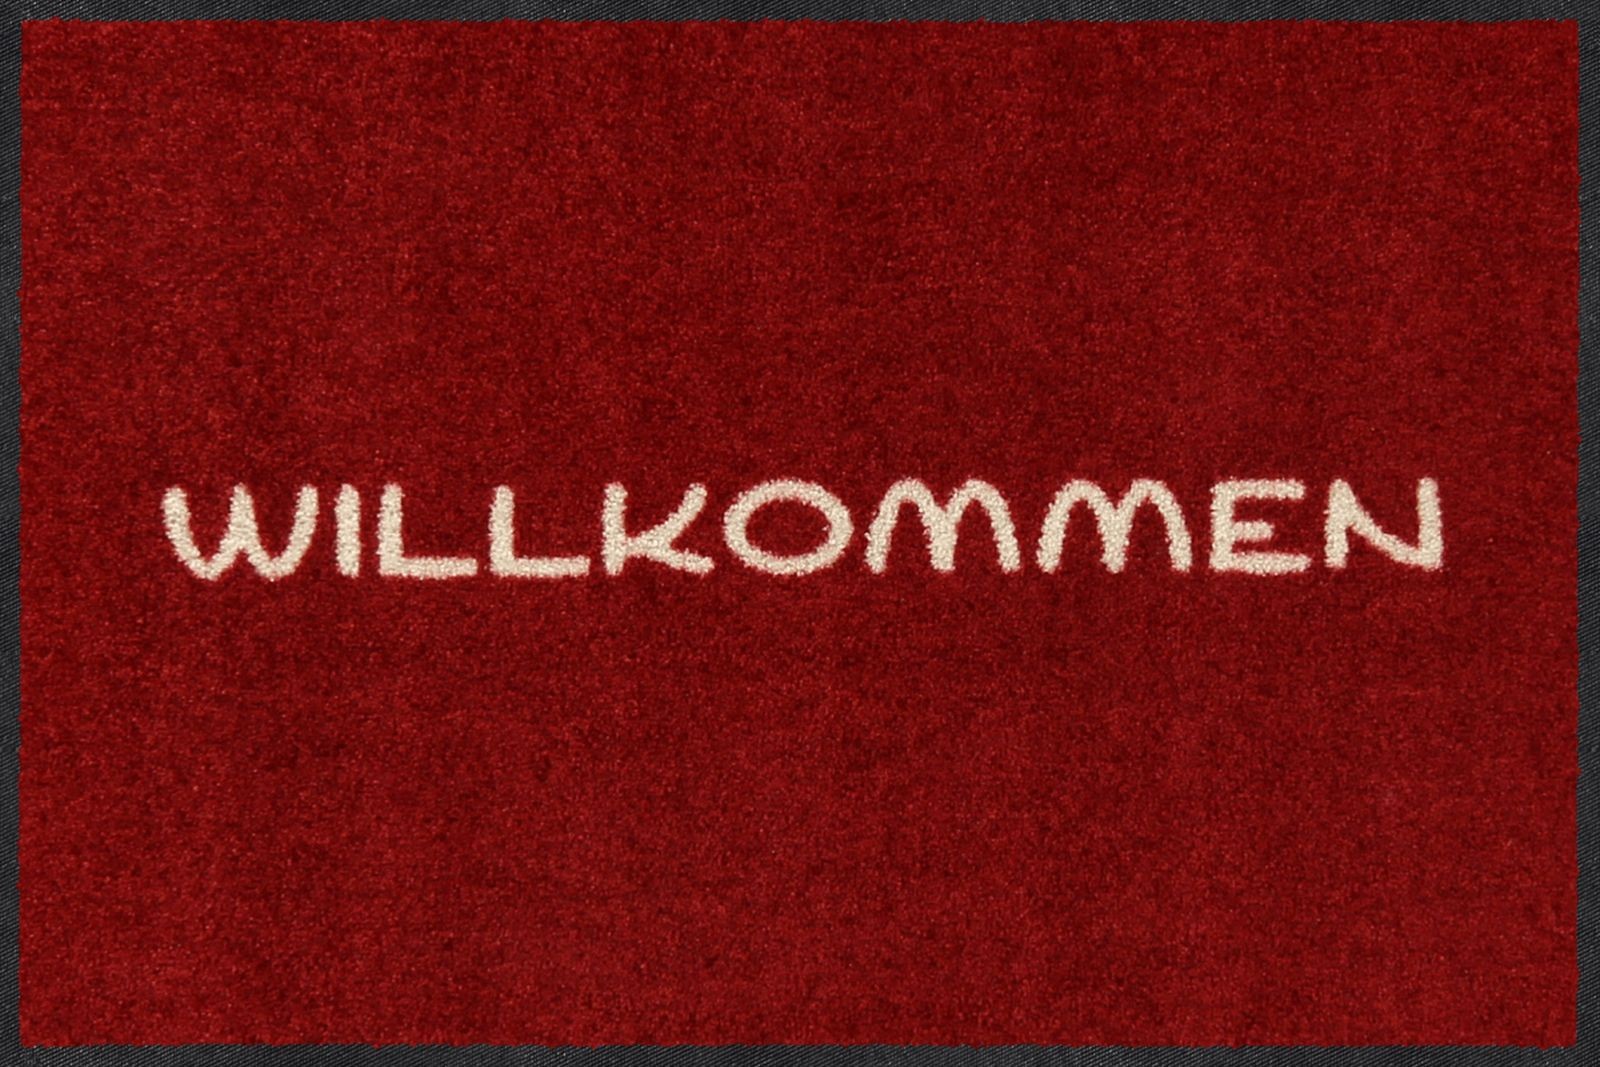 https://www.traummatten.de/media/catalog/product/cache/1/image/9df78eab33525d08d6e5fb8d27136e95/s/l/sld2721-050x075_einfach_willkommen_rot_p.jpg